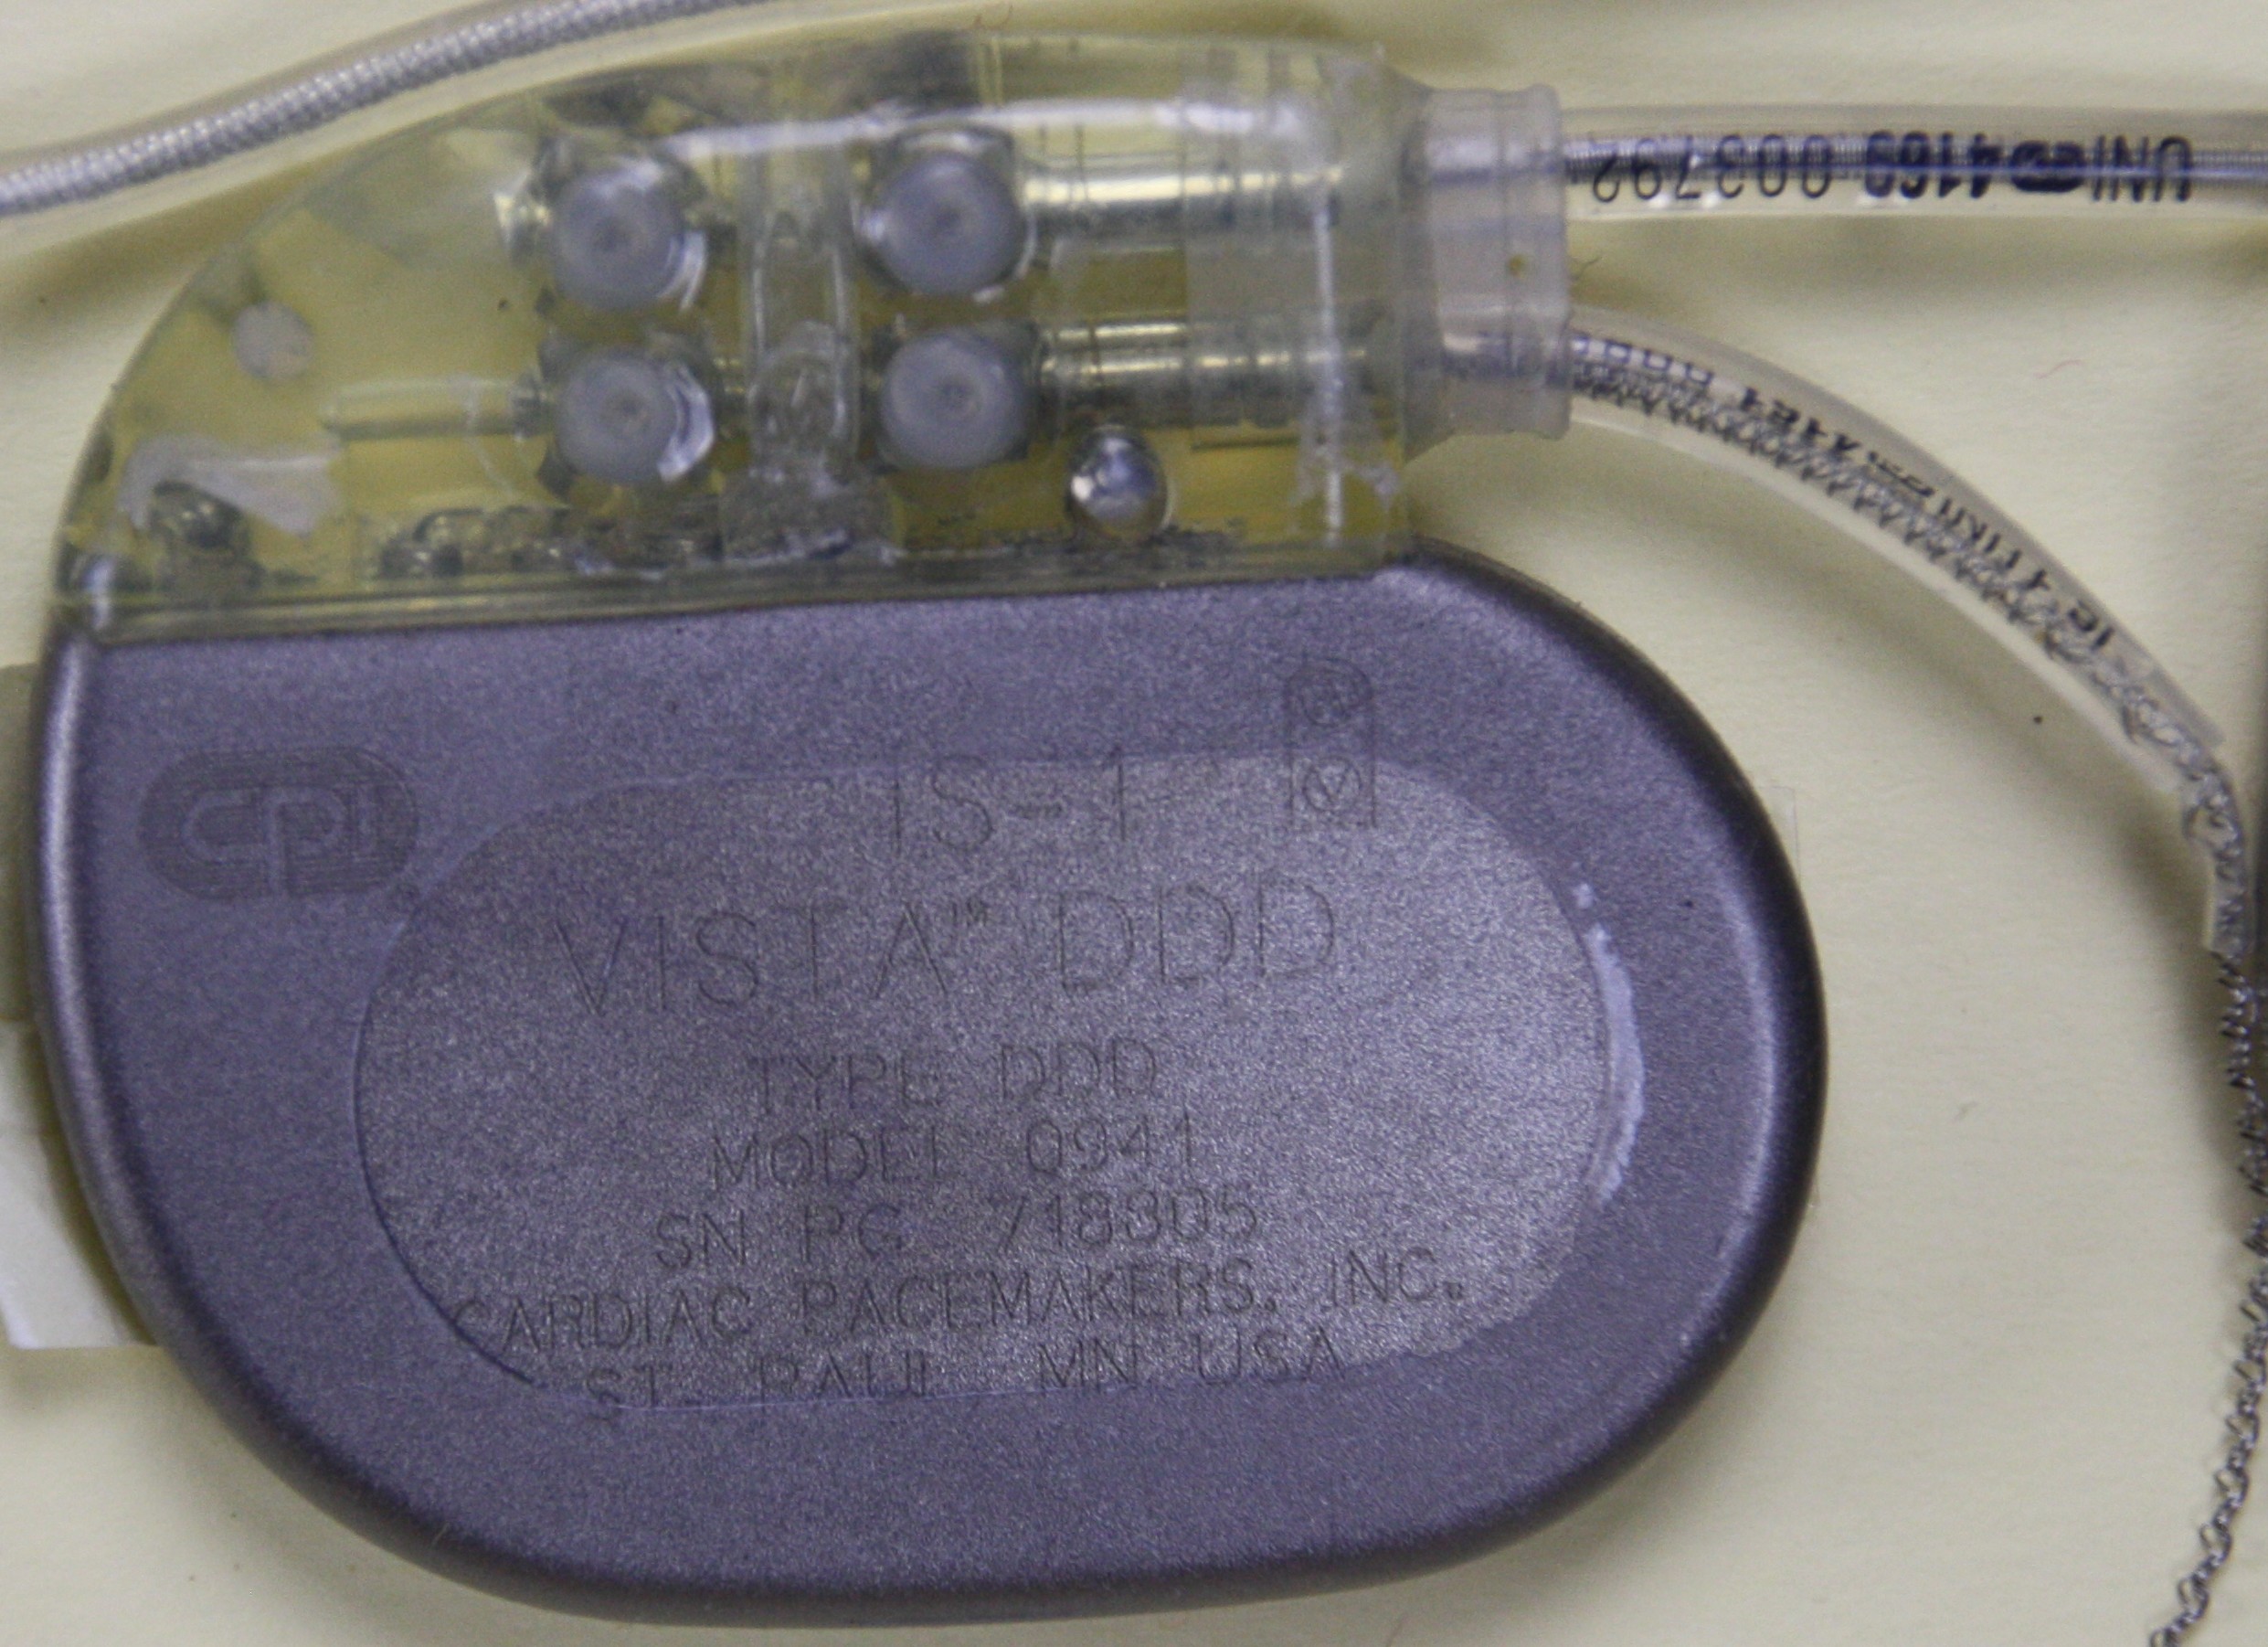 Herzschrittmacher-Implantat CPI, Vista DDD 0941 (Krankenhausmuseum Bielefeld e.V. CC BY-NC-SA)